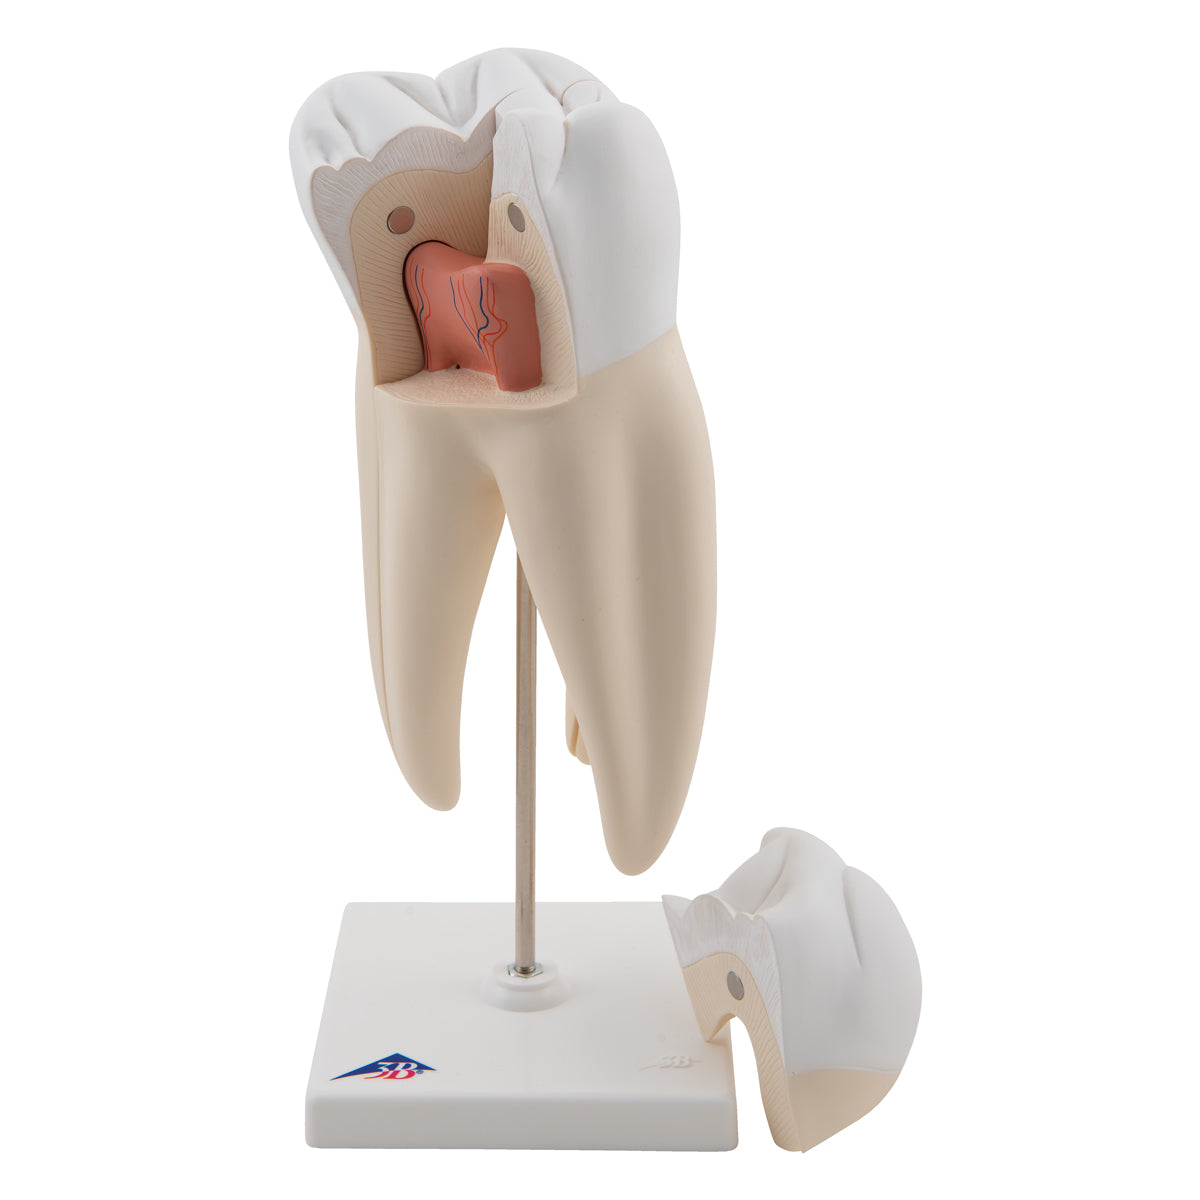 5 förstorade och olika tänder (inkl. karies) presenterade på separata stativ